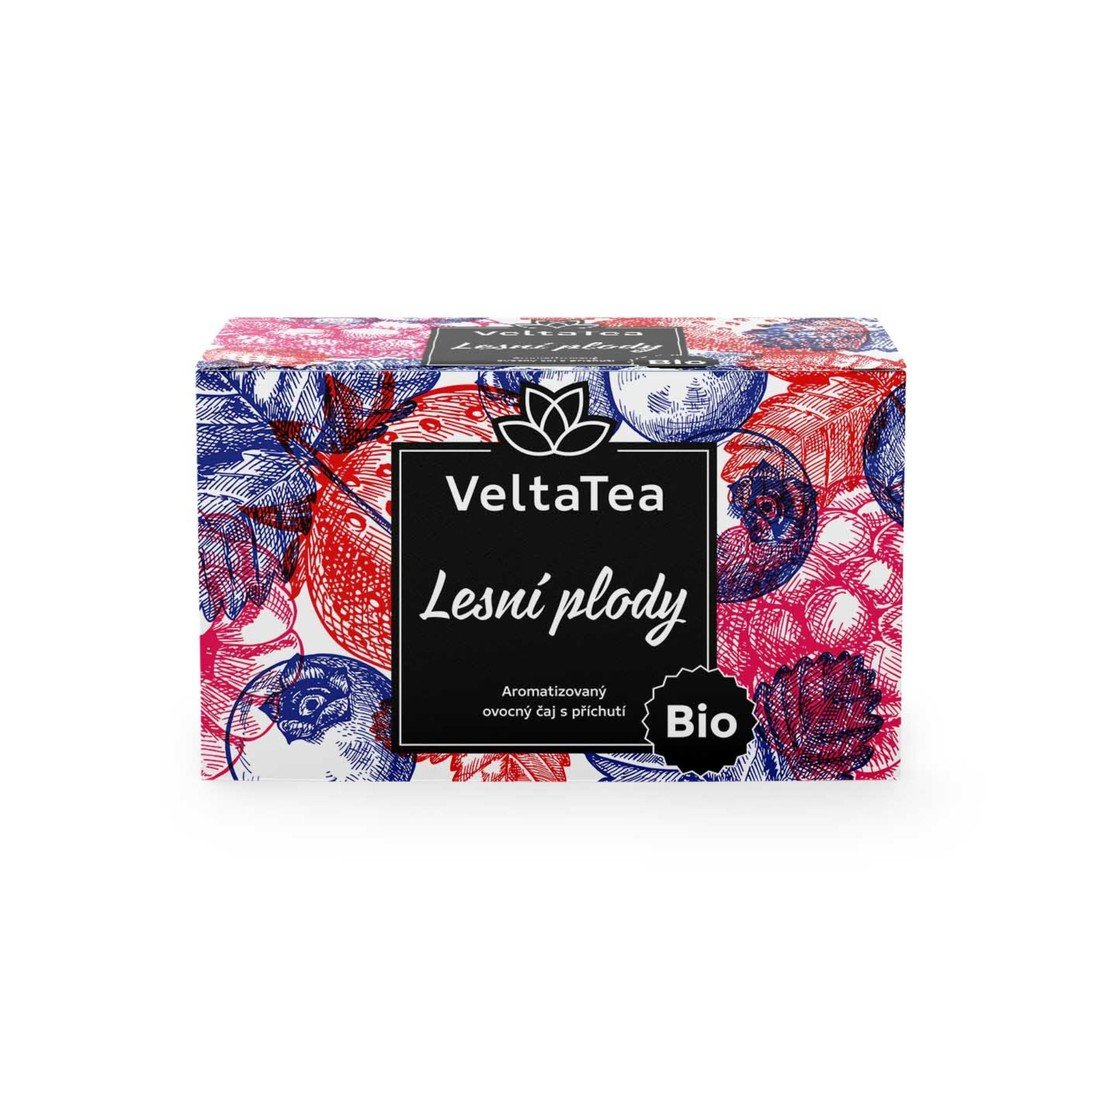 Velta Tea Ovocný čaj VeltaTea - lesní plody, bio, 20x 2 g